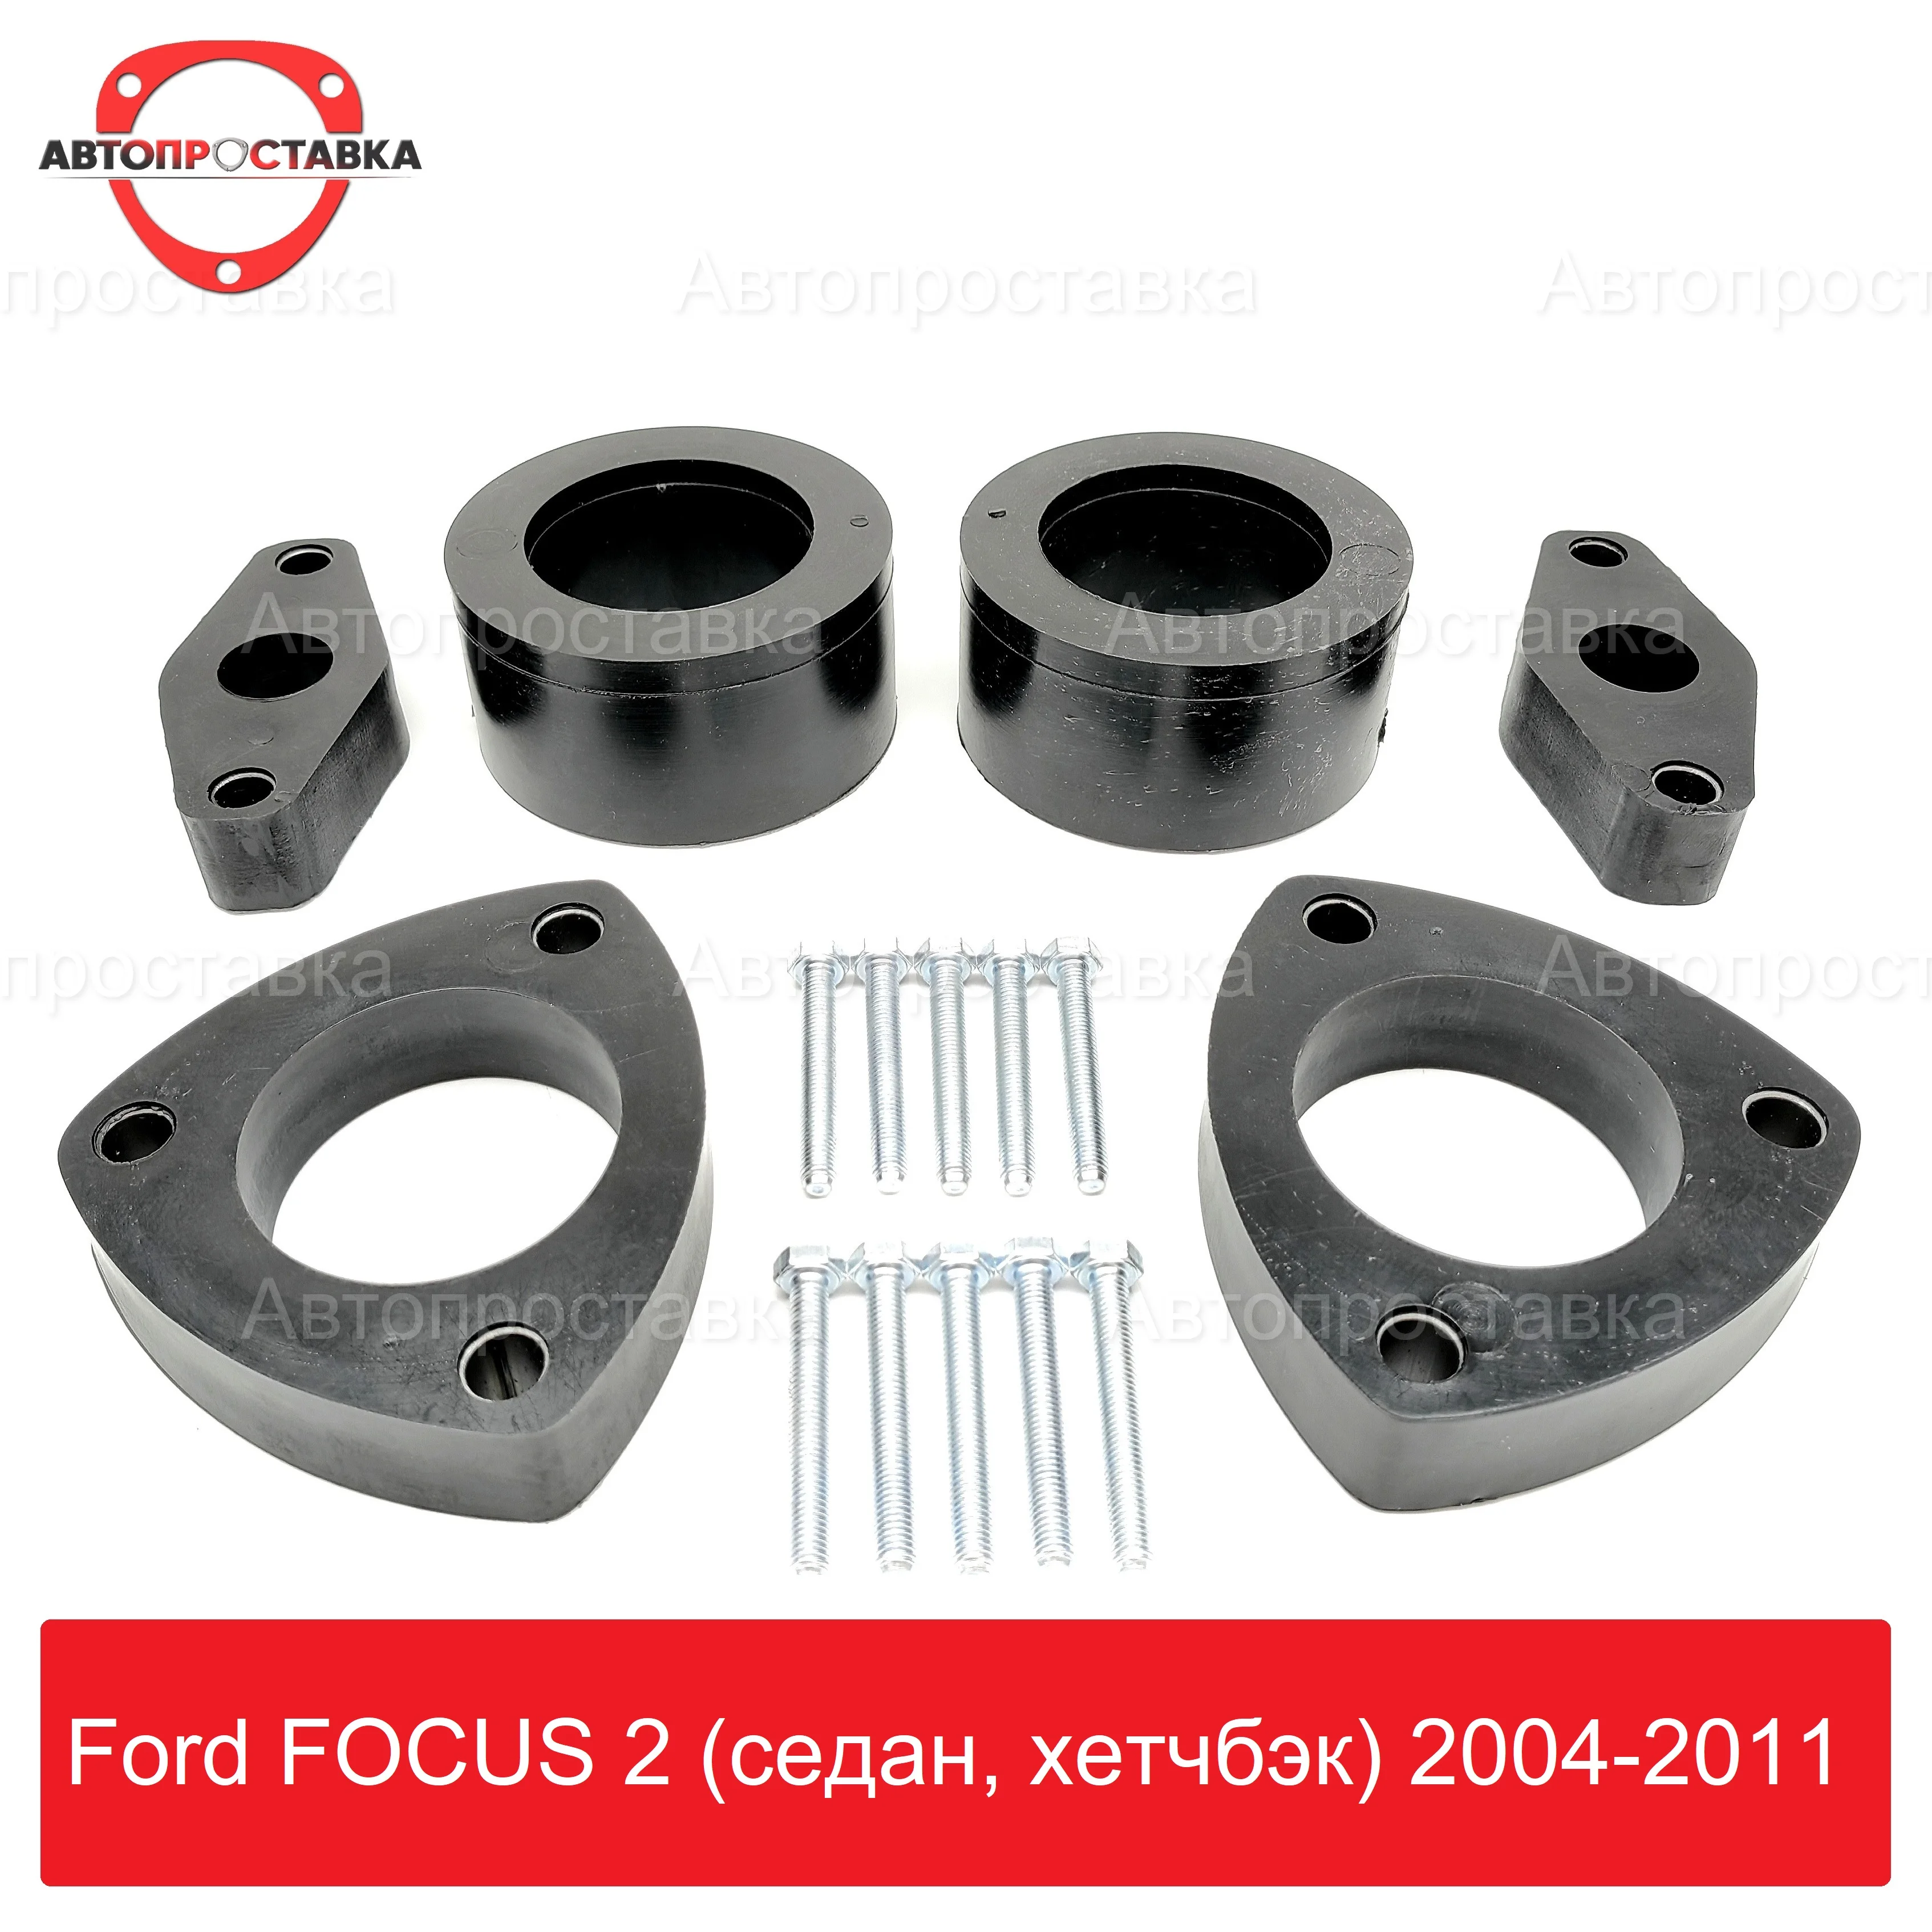 Комплект проставок Ford FOCUS 2 (седан хетчбэк) 2004-2011 для увеличения клиренса